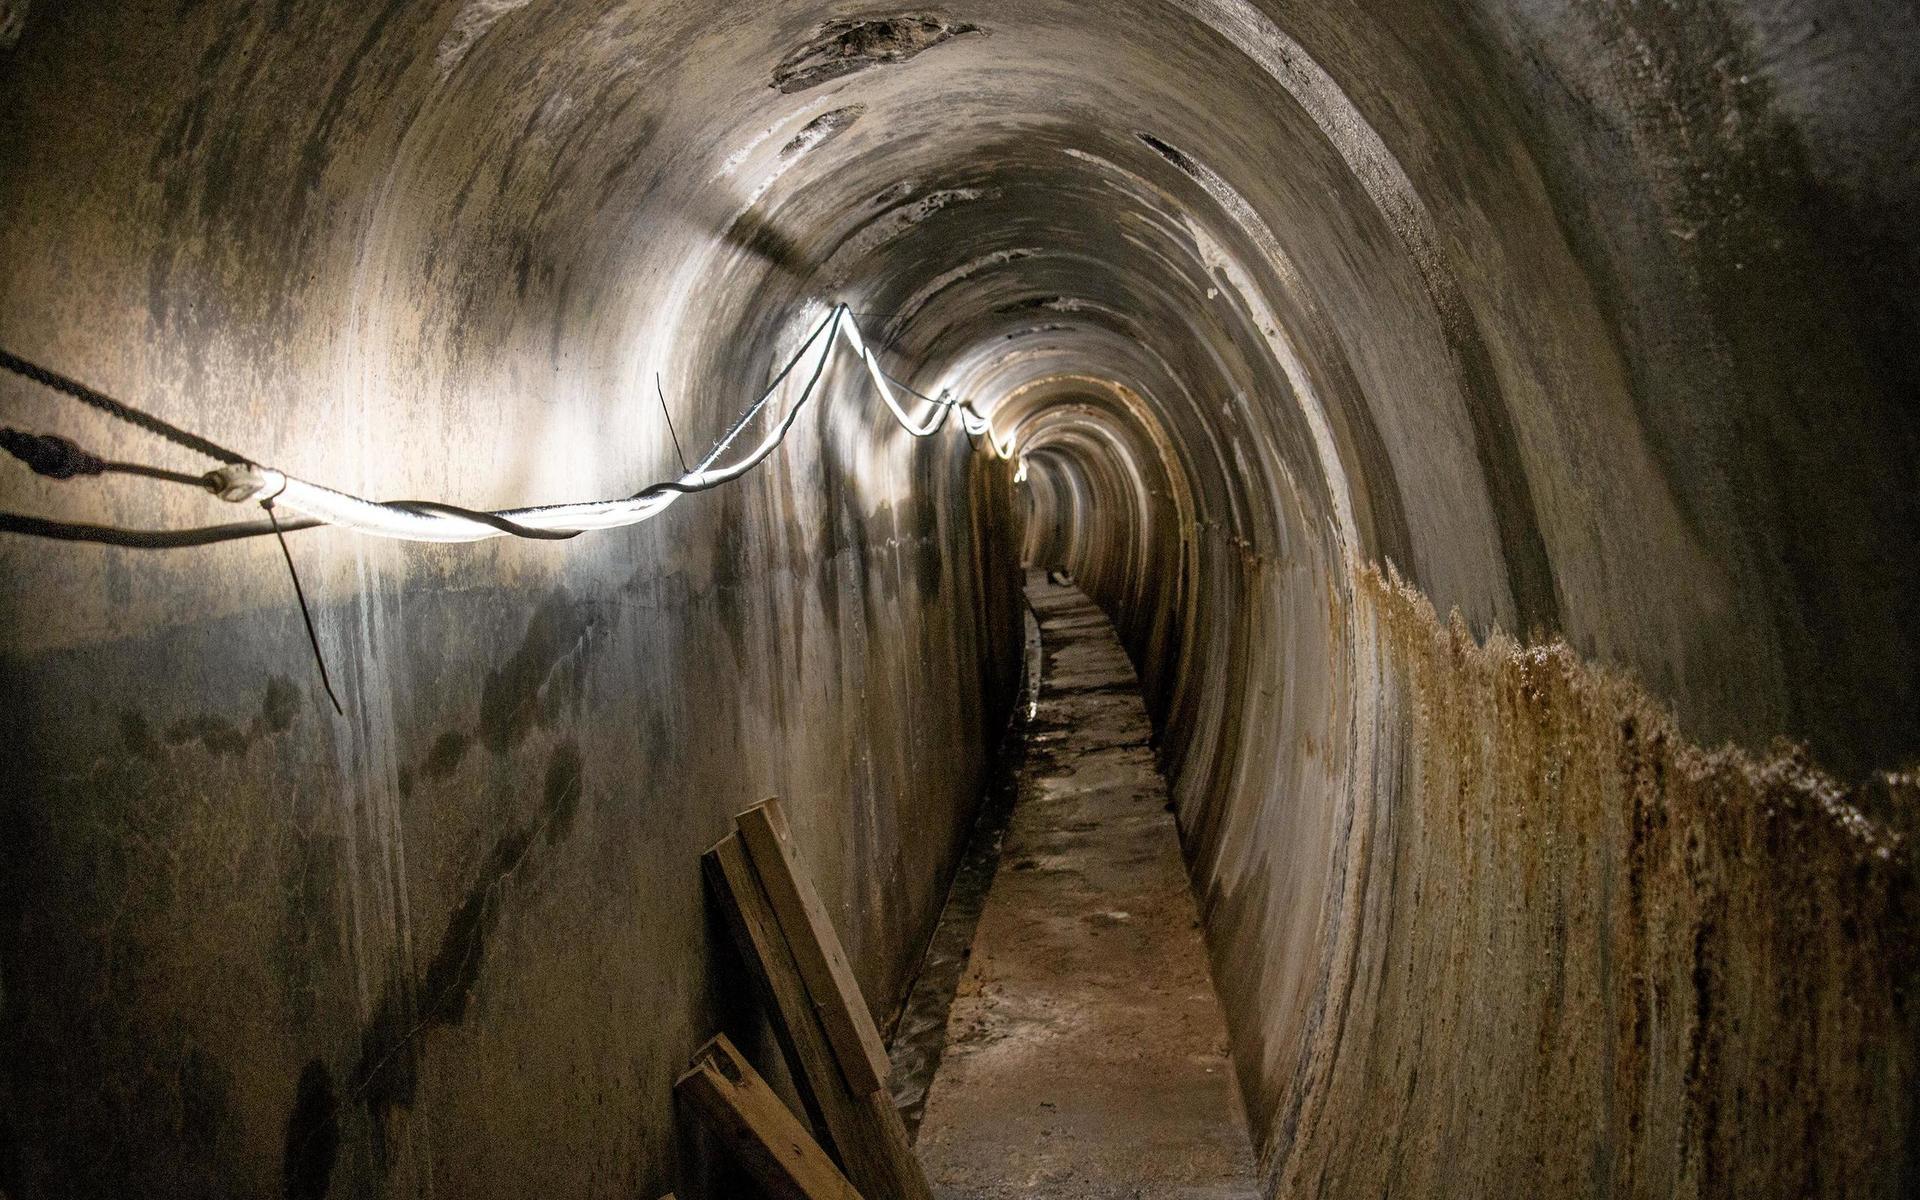 Inspektionstunnlar finns både vid kraftstationen och dammen. Den här trånga gången går inne i kraftverksdammens betongkropp.